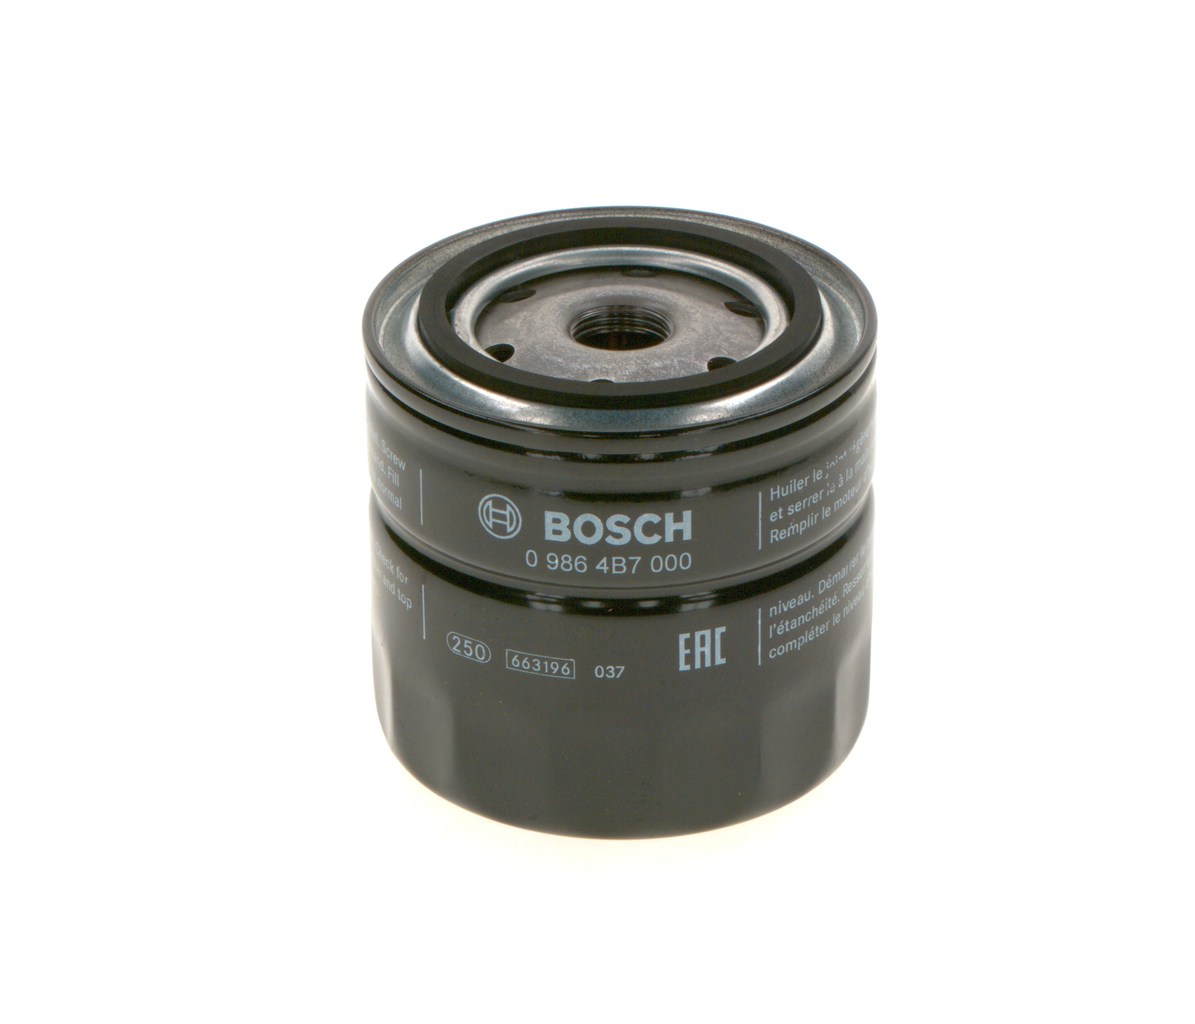 BOSCH 0 986 4B7 000 Oil filter 3/4